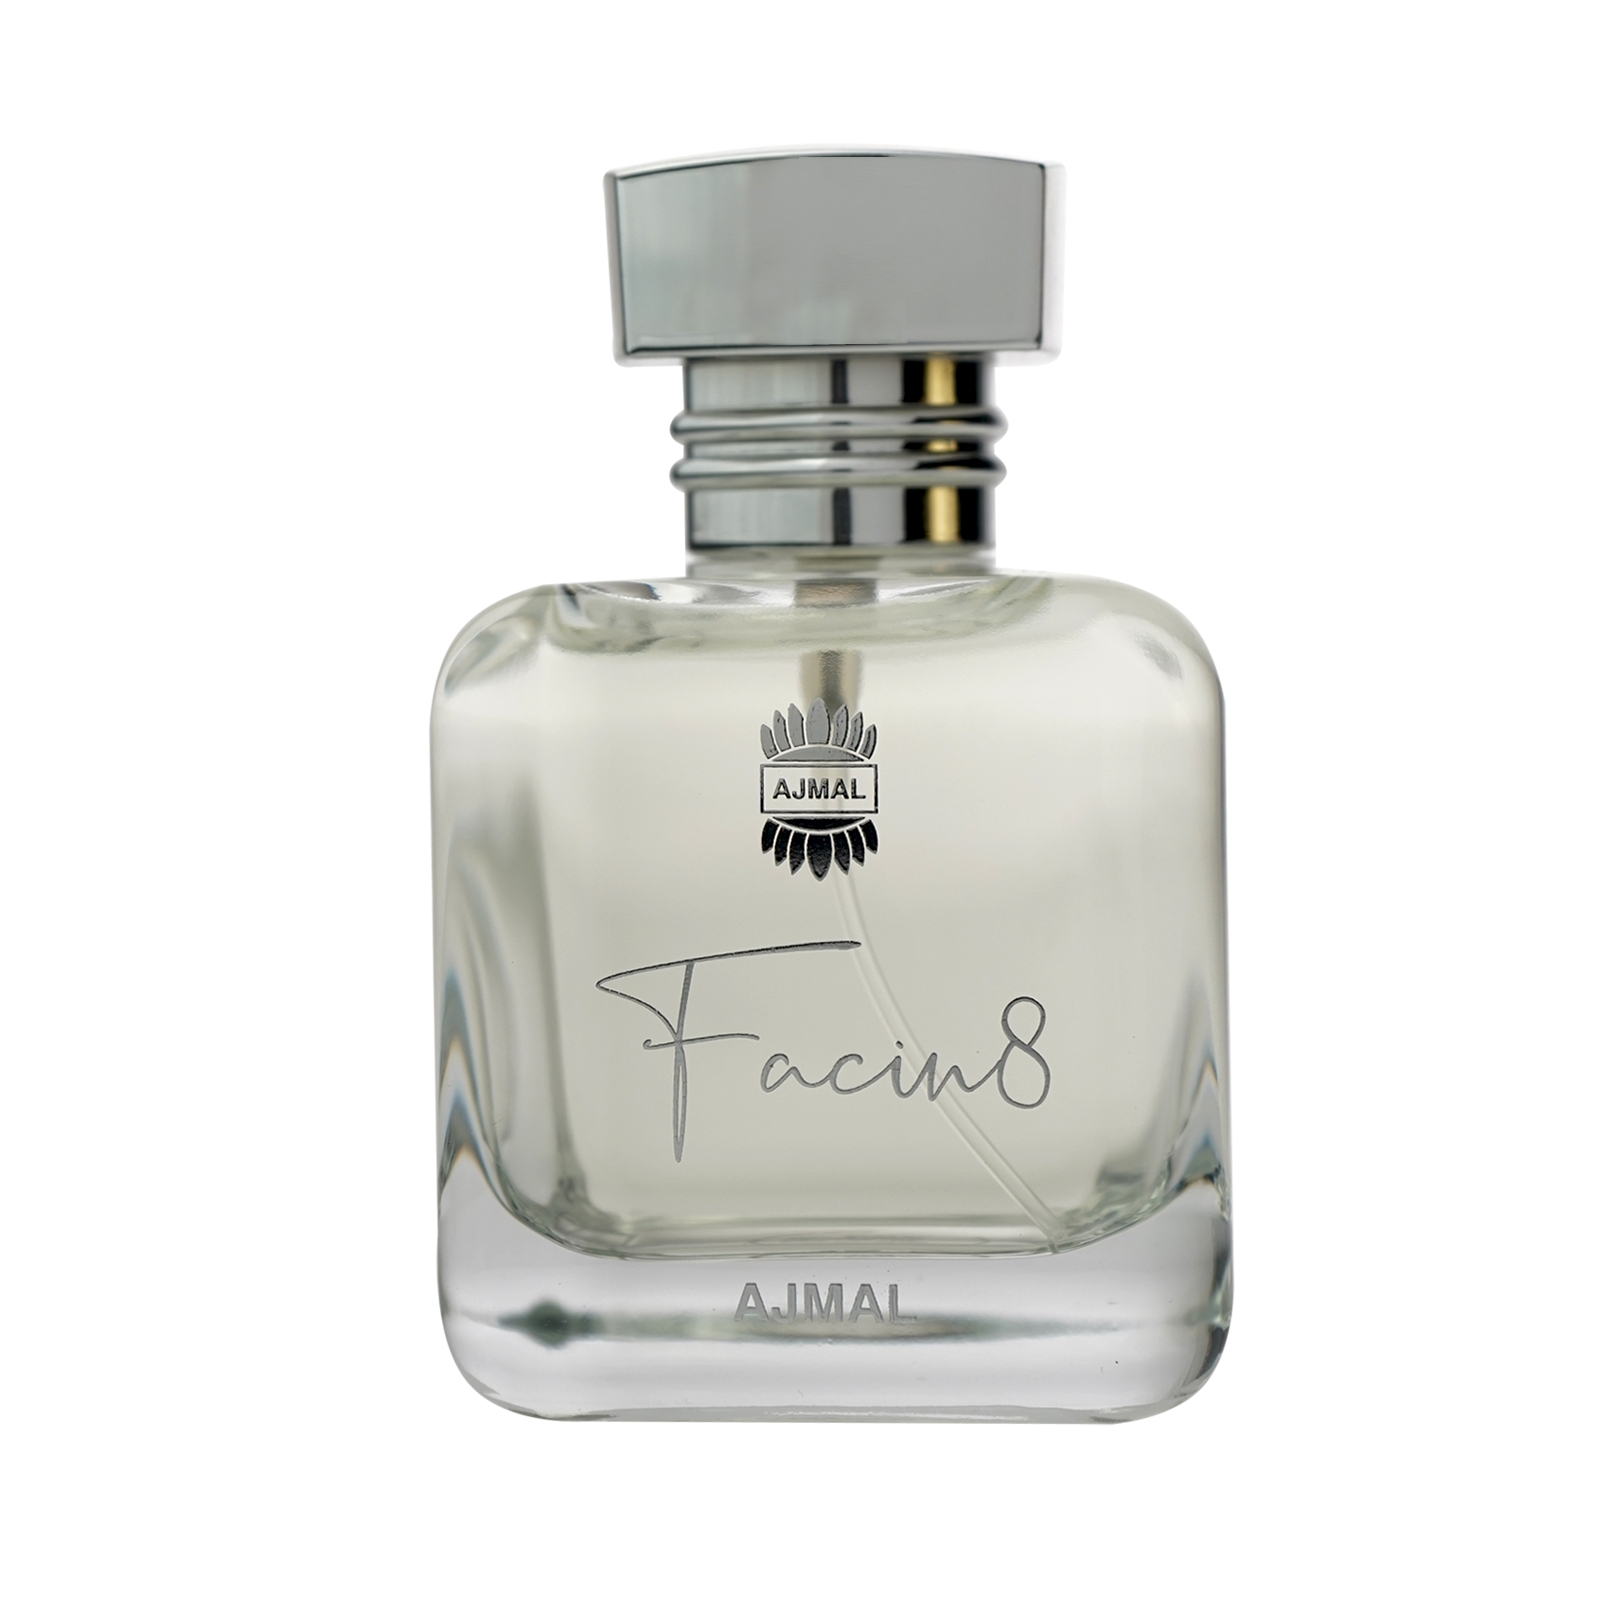 Ajmal | Ajmal Facin8 Edp Perfume 100Ml Long Lasting Scent Spray Gift For Men +2 Tester